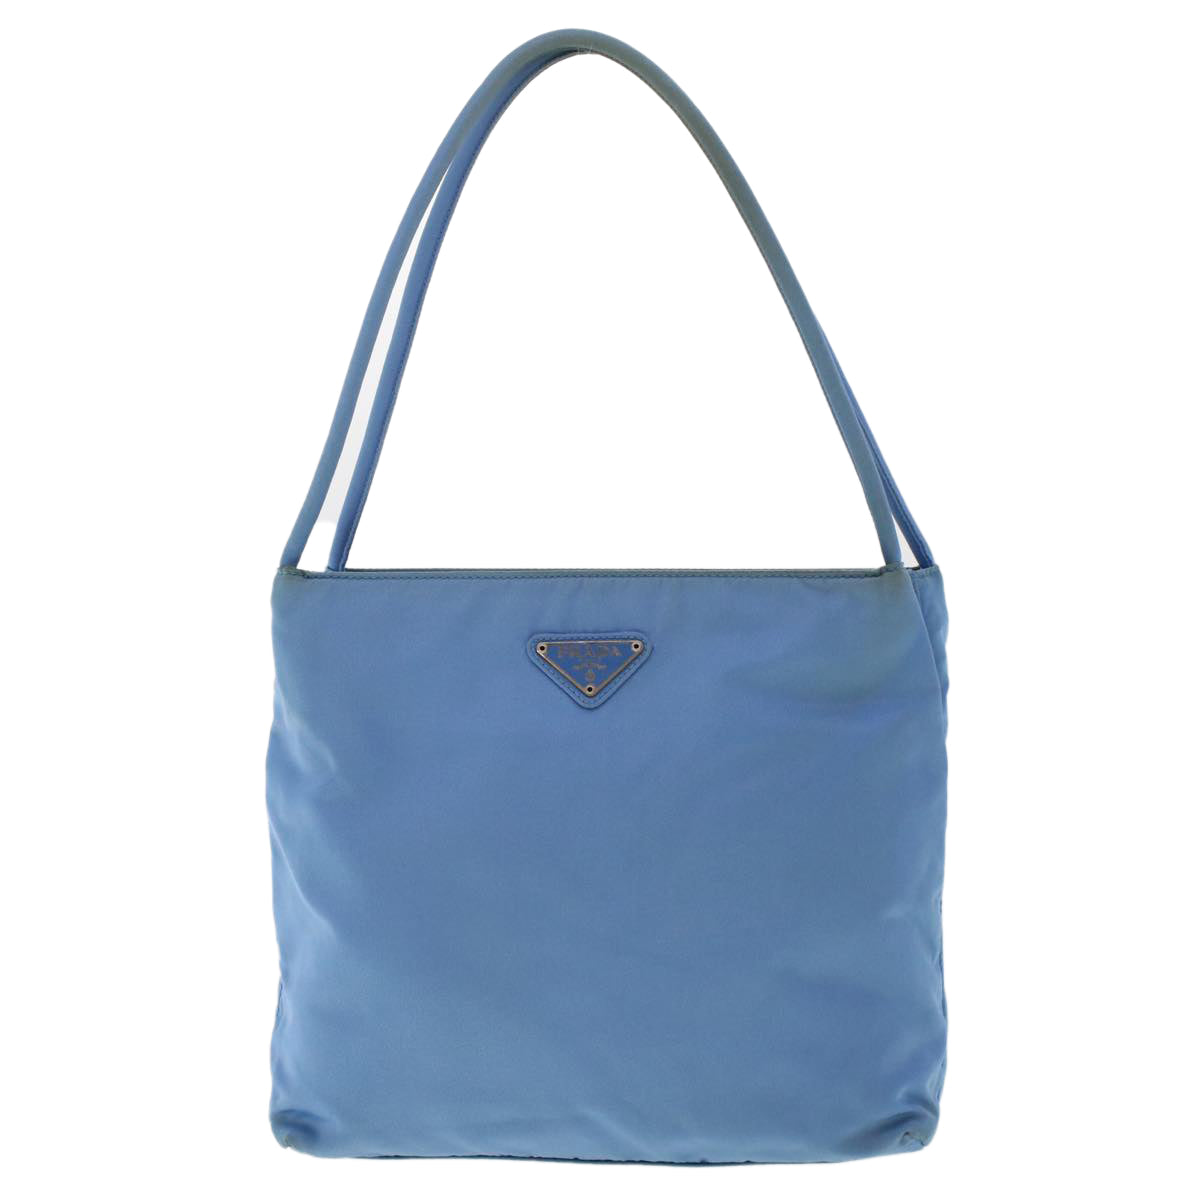 PRADA Hand Bag Nylon Light Blue Auth 49028